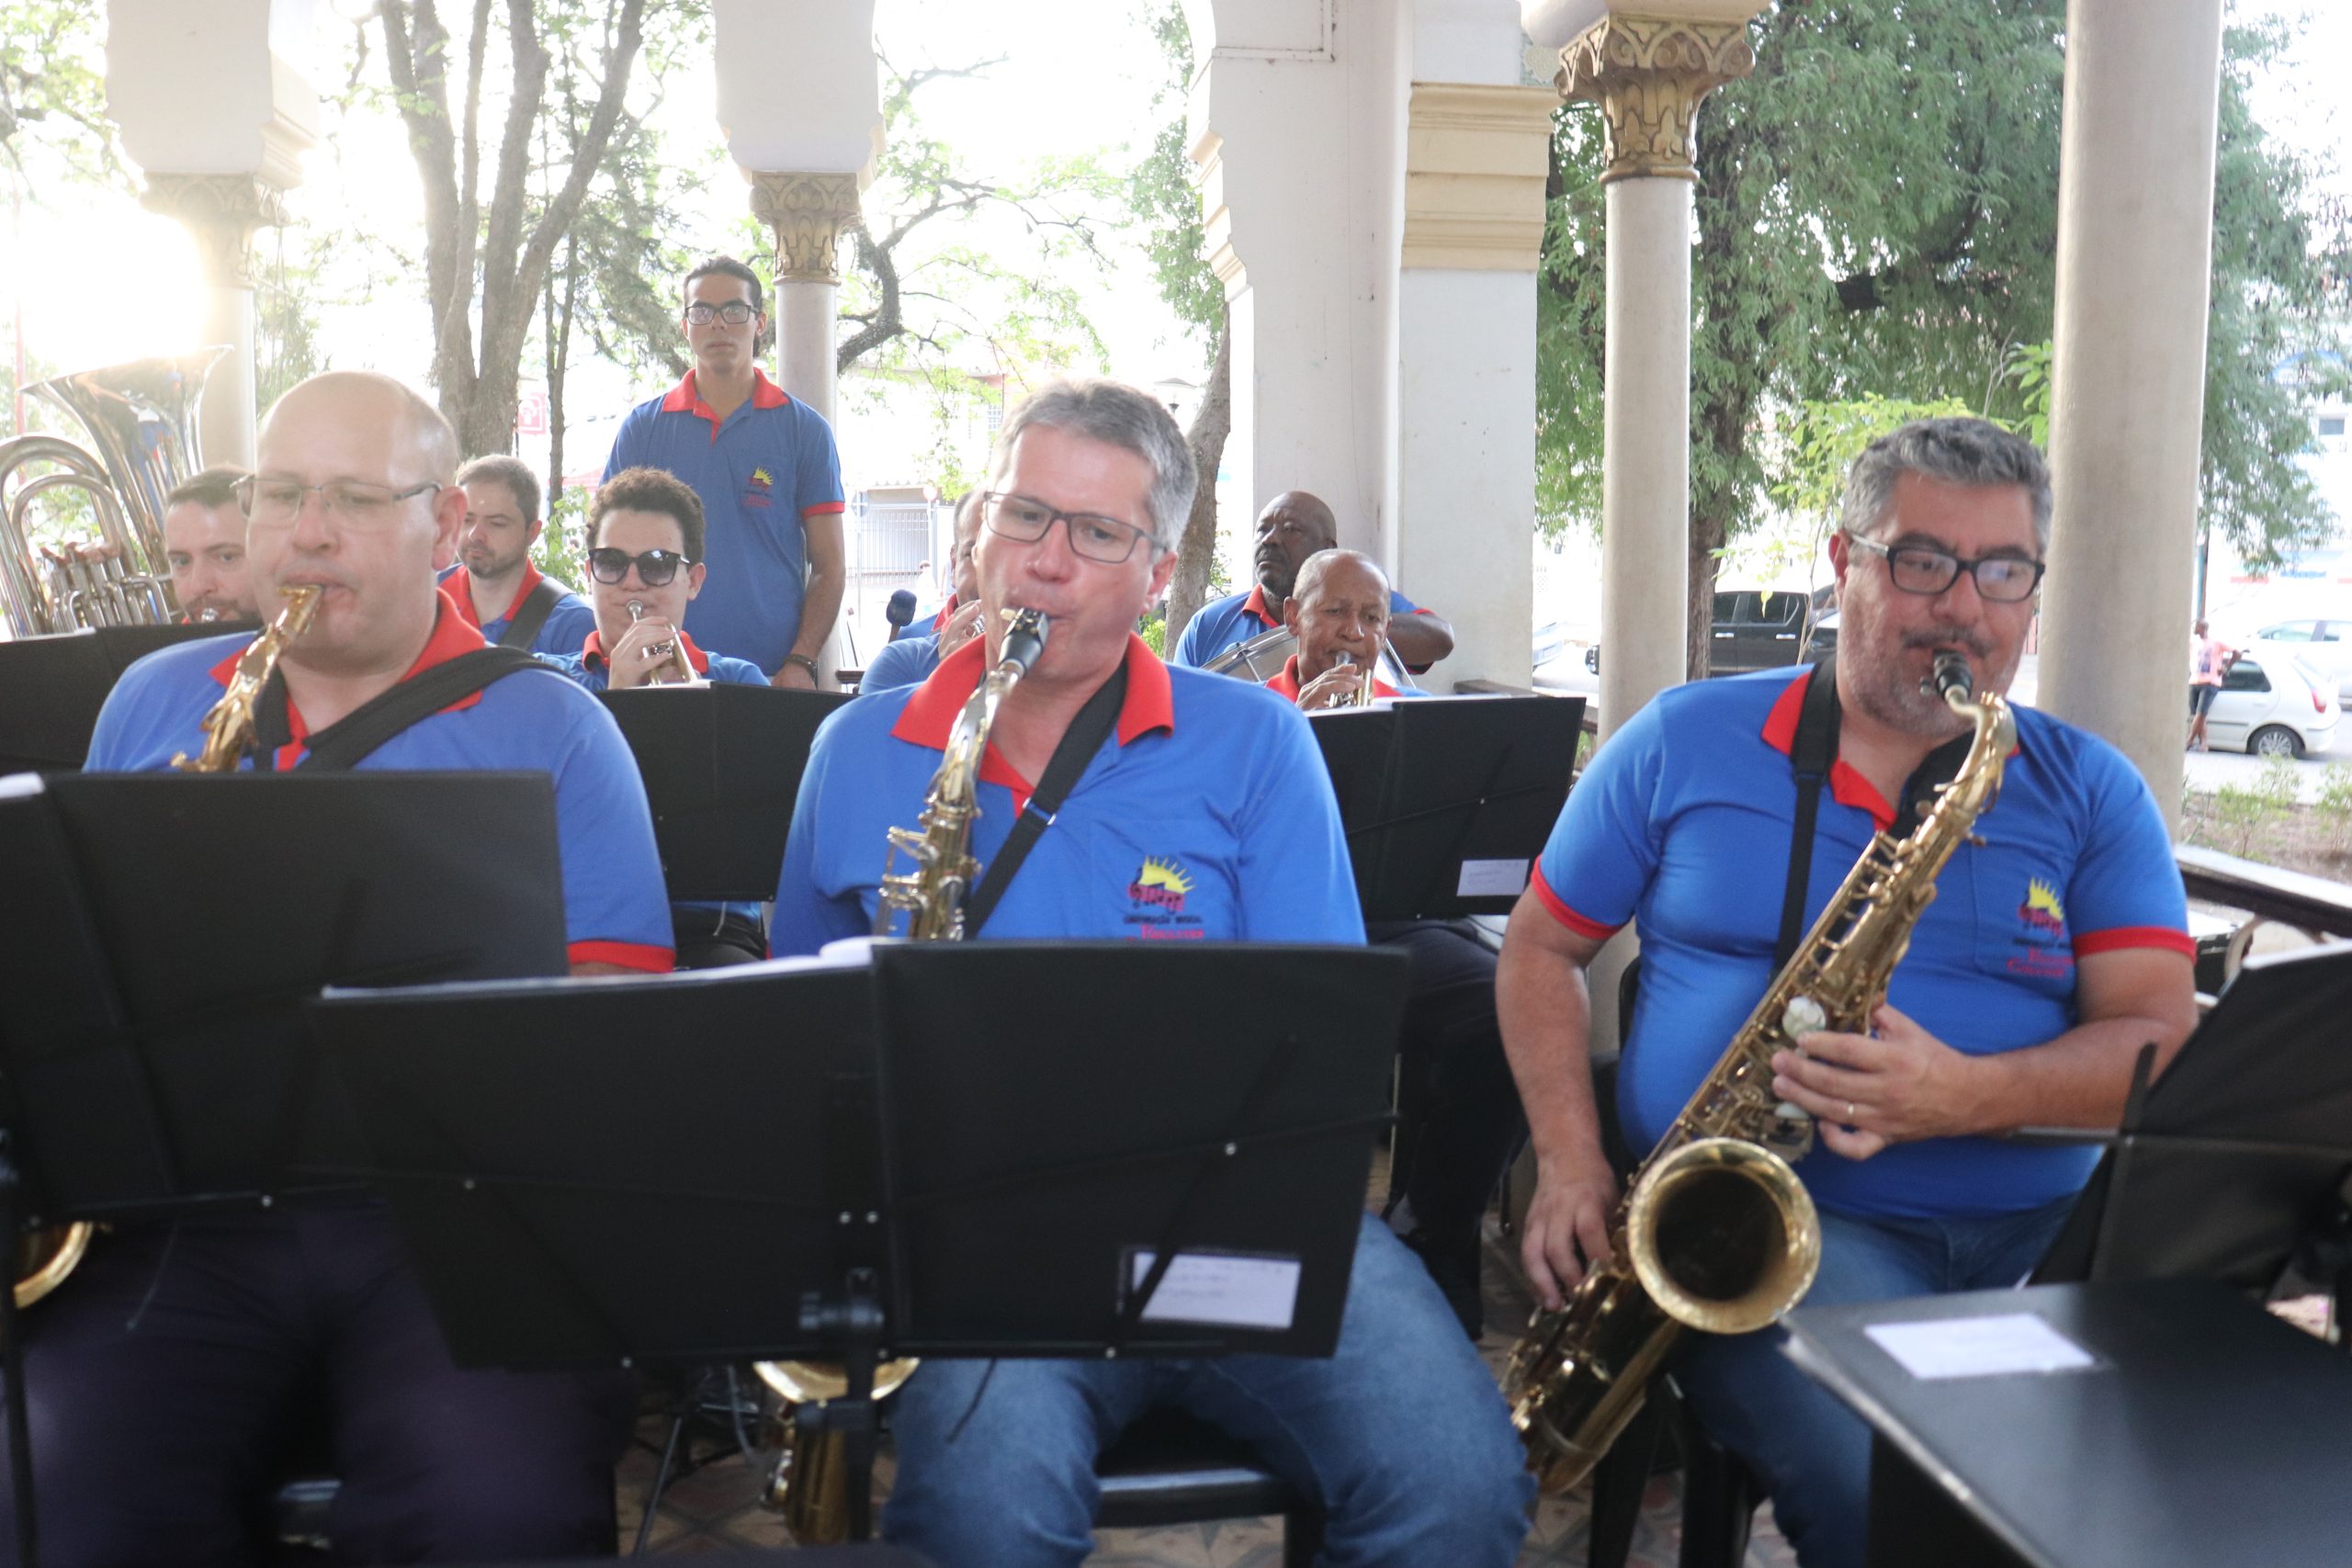 Programa “Domingos Musicais” tem apresentação da Corporação Musical Euclydes Colaneri no bairro Santa Rita de Cássia, no próximo dia 21